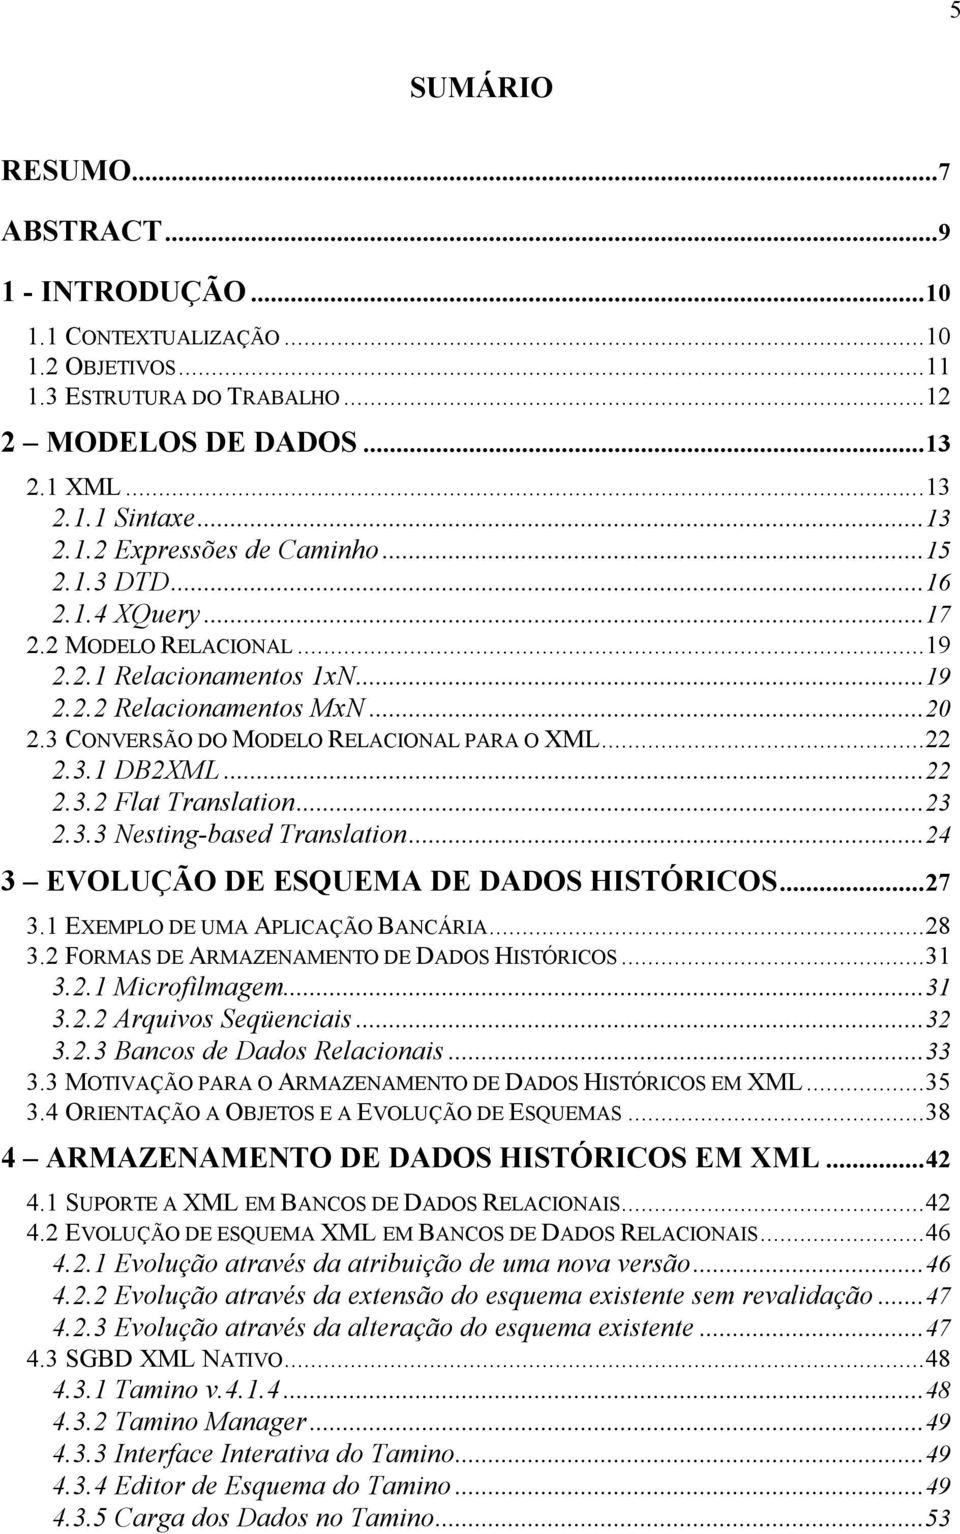 ..23 2.3.3 Nesting-based Translation...24 3 EVOLUÇÃO DE ESQUEMA DE DADOS HISTÓRICOS...27 3.1 EXEMPLO DE UMA APLICAÇÃO BANCÁRIA...28 3.2 FORMAS DE ARMAZENAMENTO DE DADOS HISTÓRICOS...31 3.2.1 Microfilmagem.